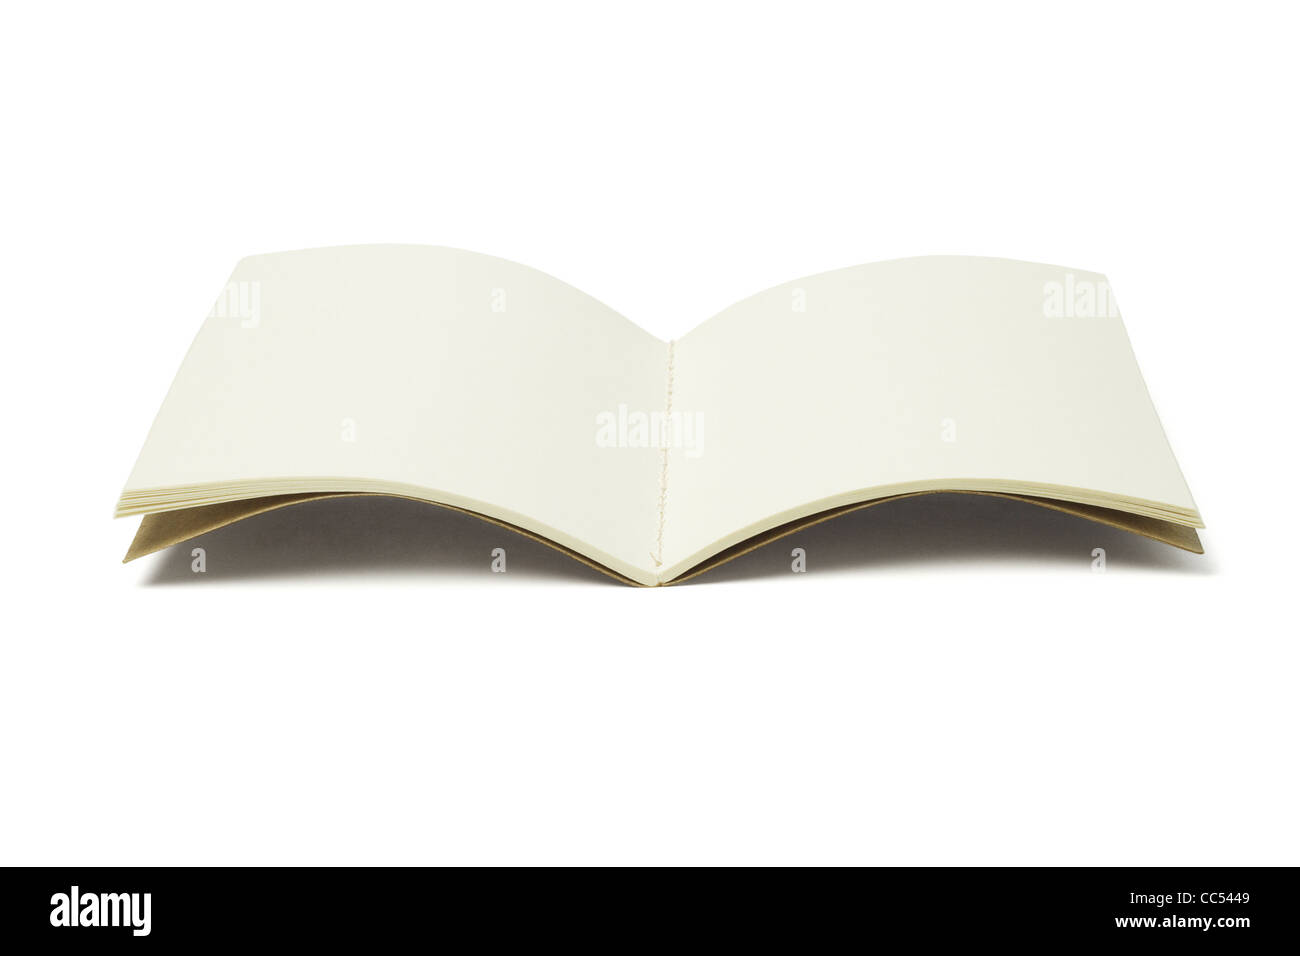 Offene leere Faden nähen Buch auf weißem Hintergrund Stockfoto